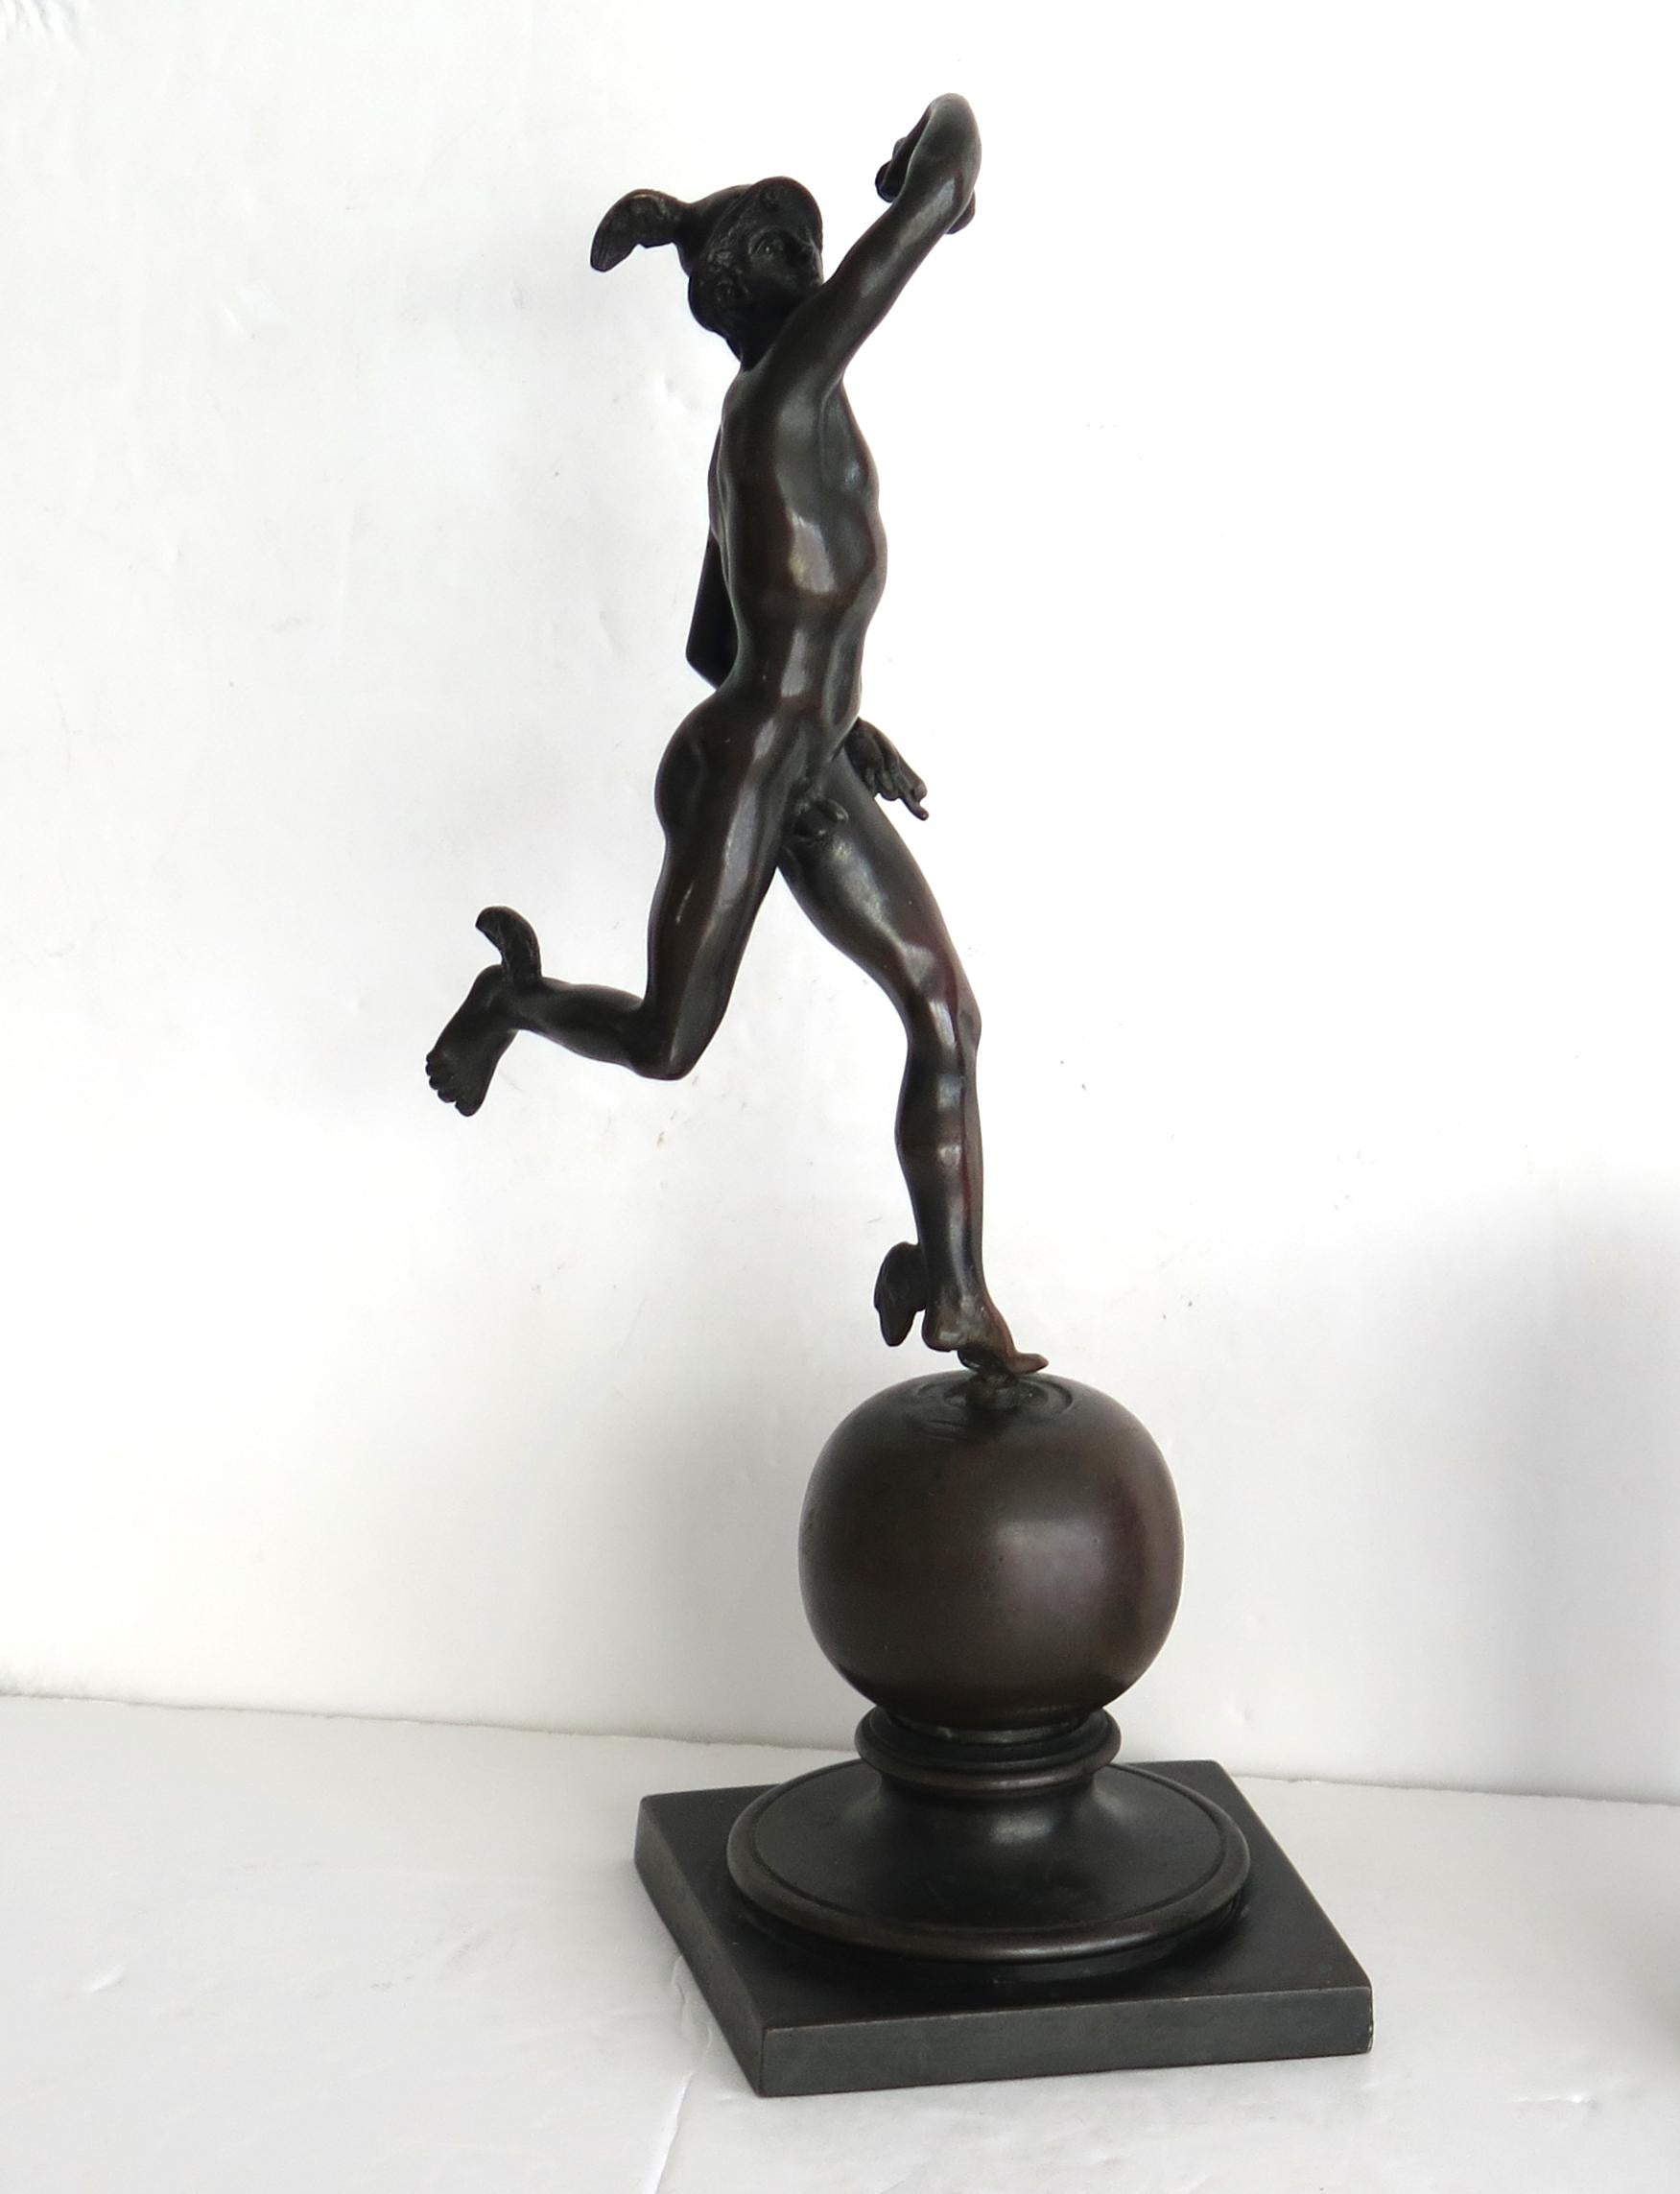 Il s'agit d'une figurine en bronze massif représentant Hermès ou Mercure, issus respectivement de la mythologie grecque et romaine. Nous datons la figurine du XIXe siècle, probablement d'un fabricant français ou autrichien.

La figurine en bronze